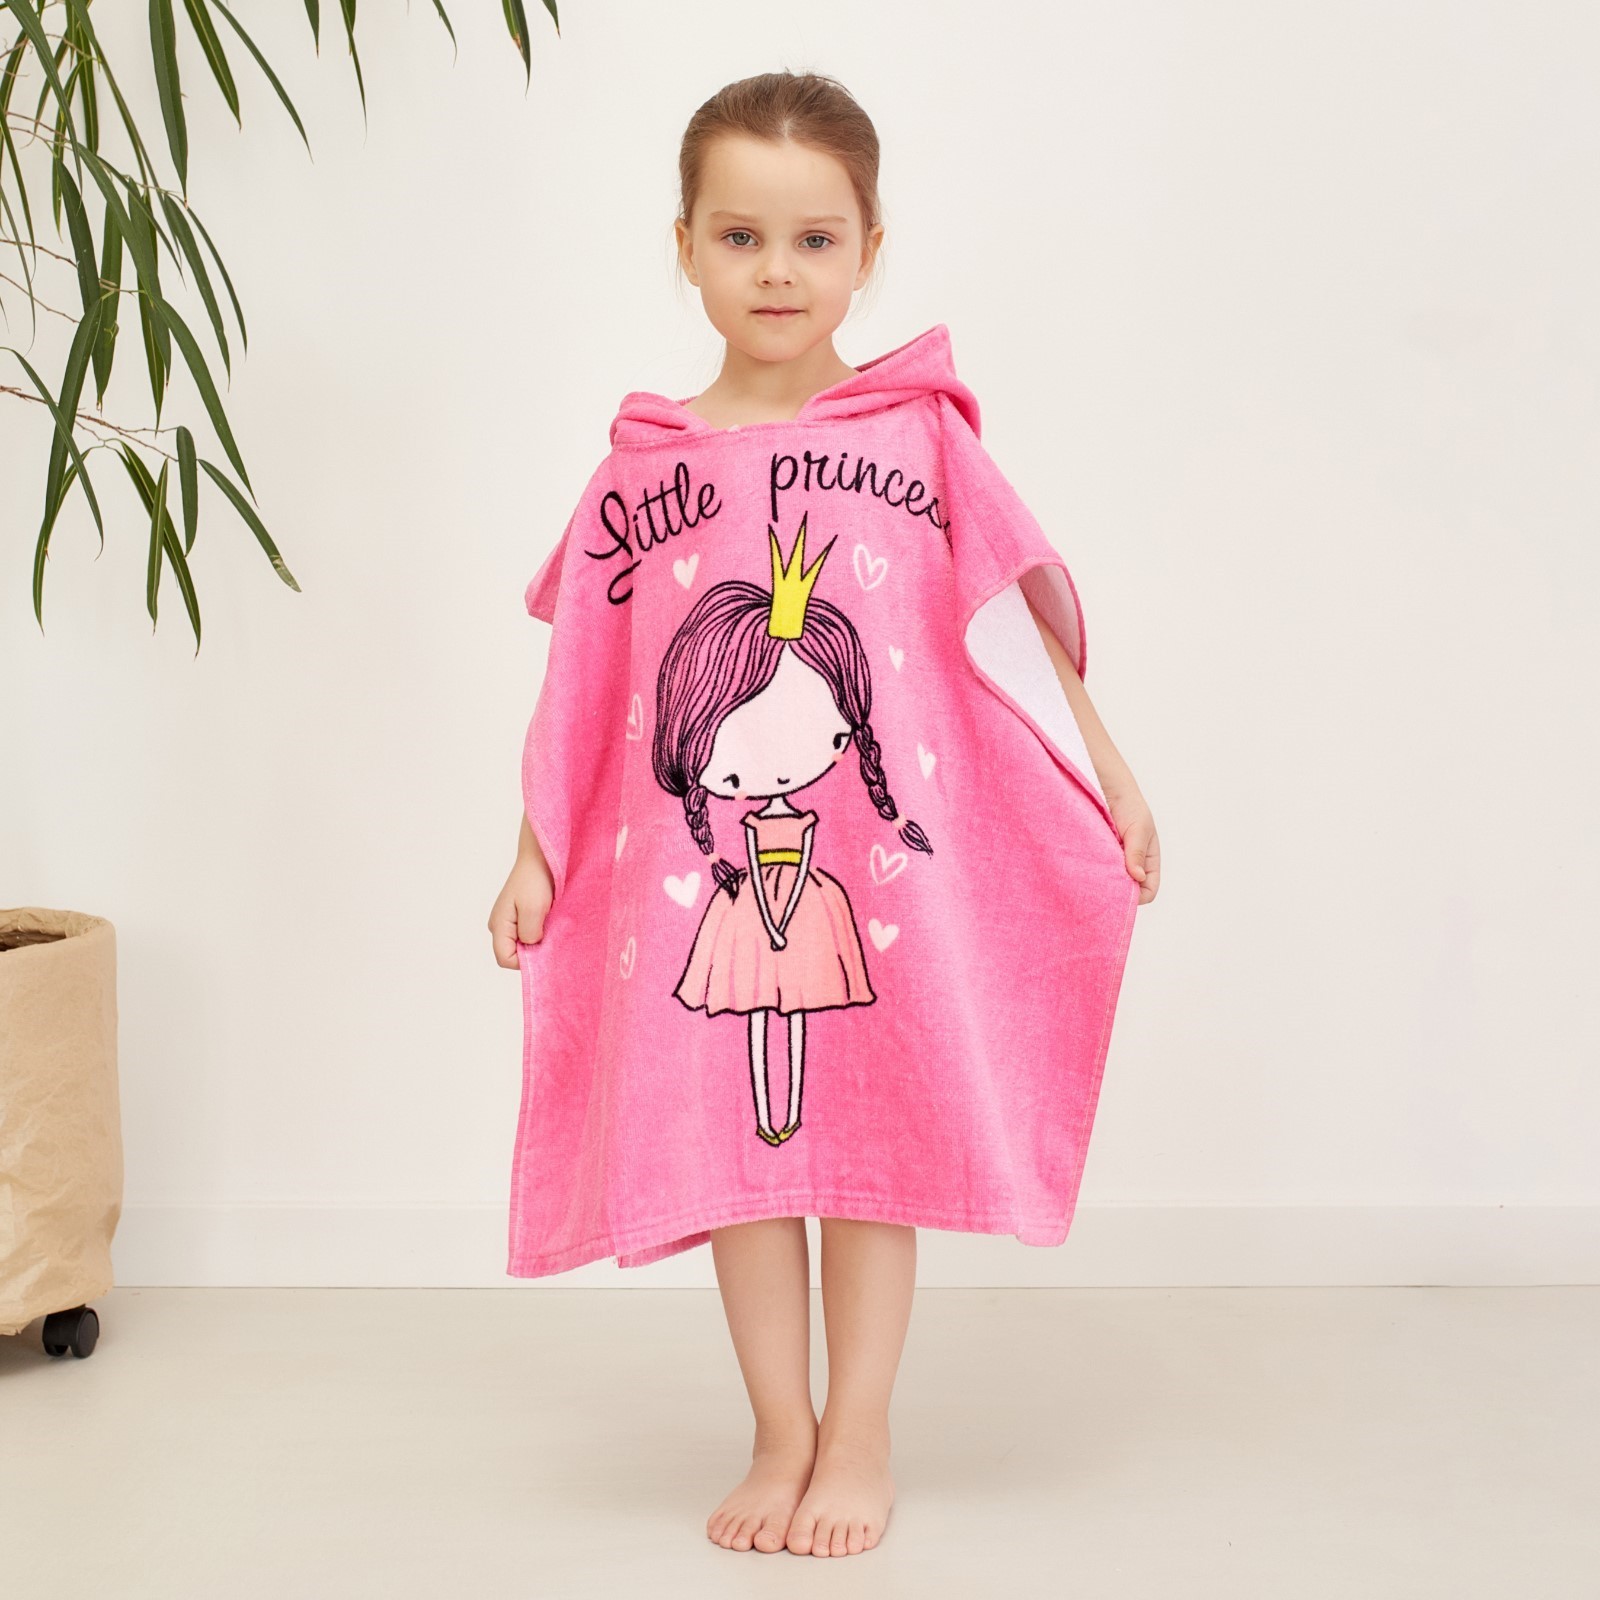 Детское полотенце Принцесса цвет: розовый (60х120 см), размер 60х120 см ros910587 Детское полотенце Принцесса цвет: розовый (60х120 см) - фото 1